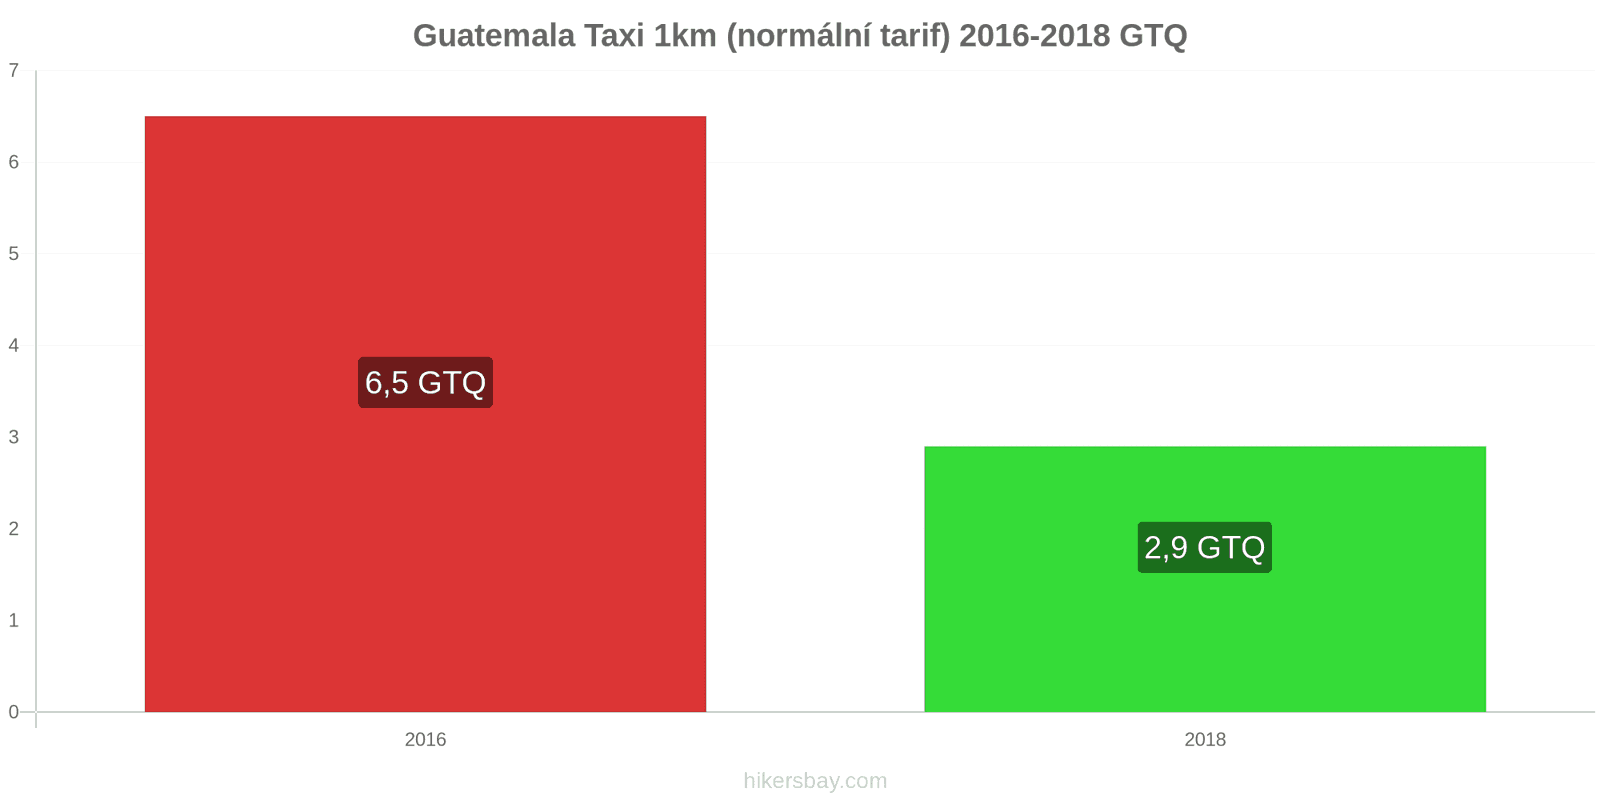 Guatemala změny cen Taxi 1km (normální tarif) hikersbay.com